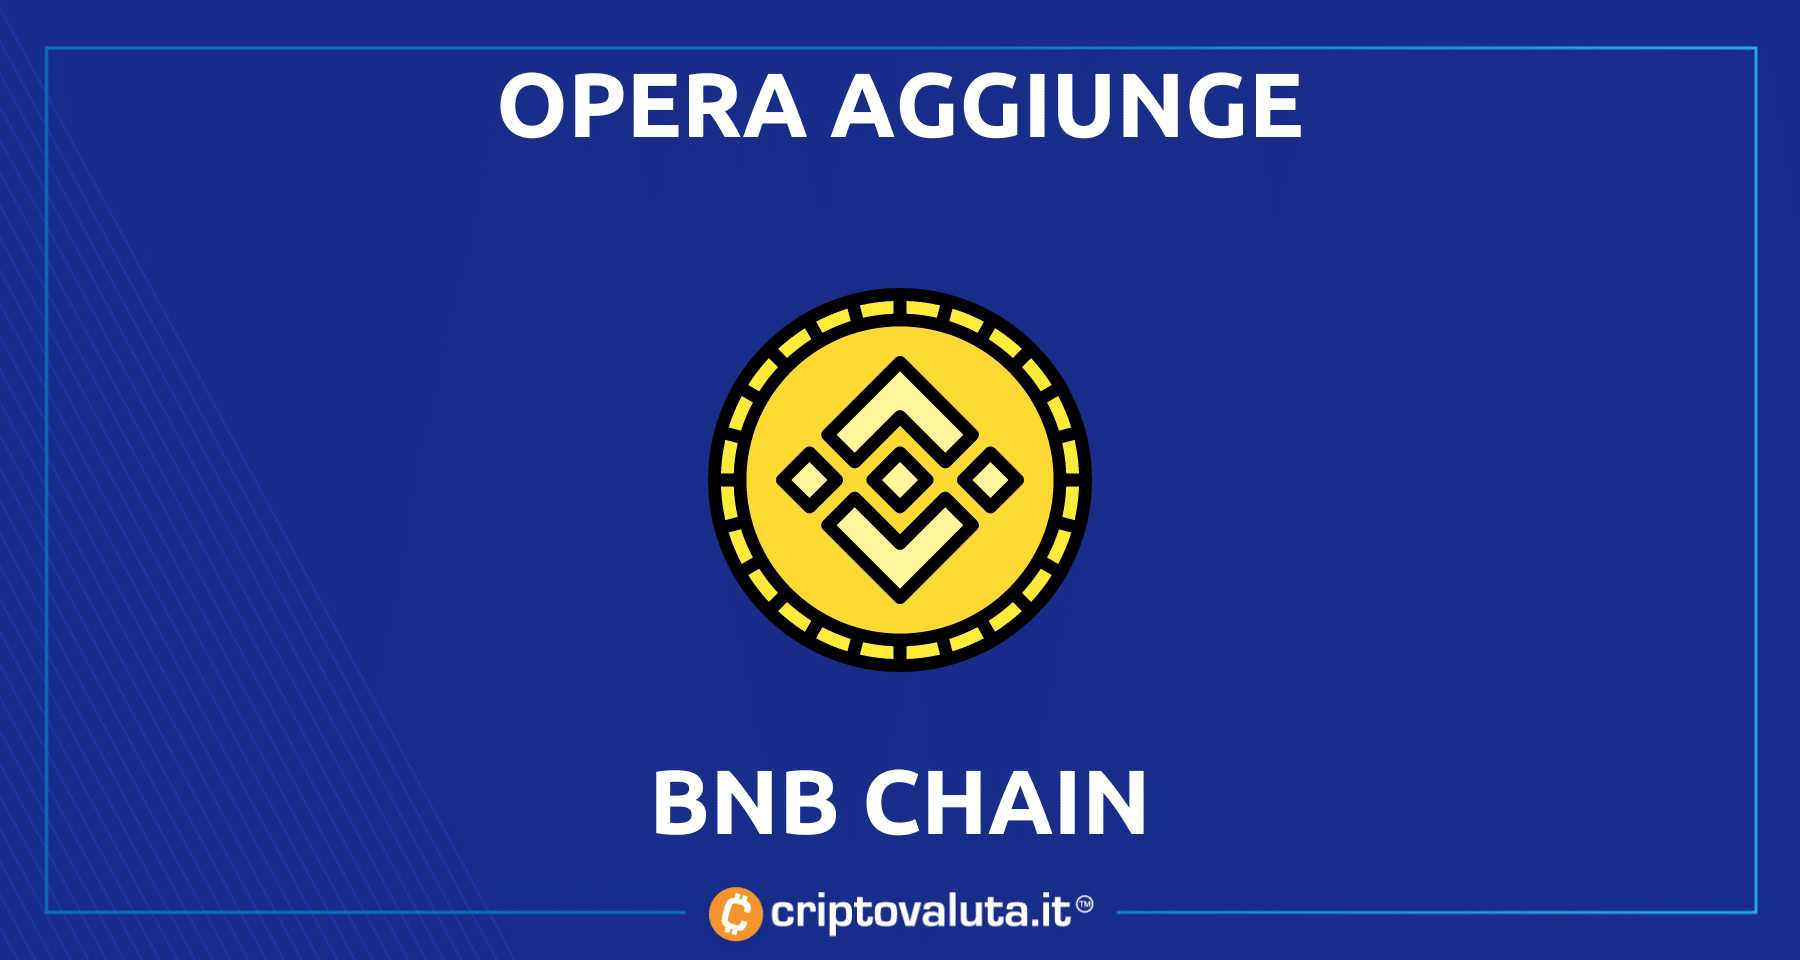 Opera aggiunge anche BNB Chain | Un’altra ottima news per $BNB